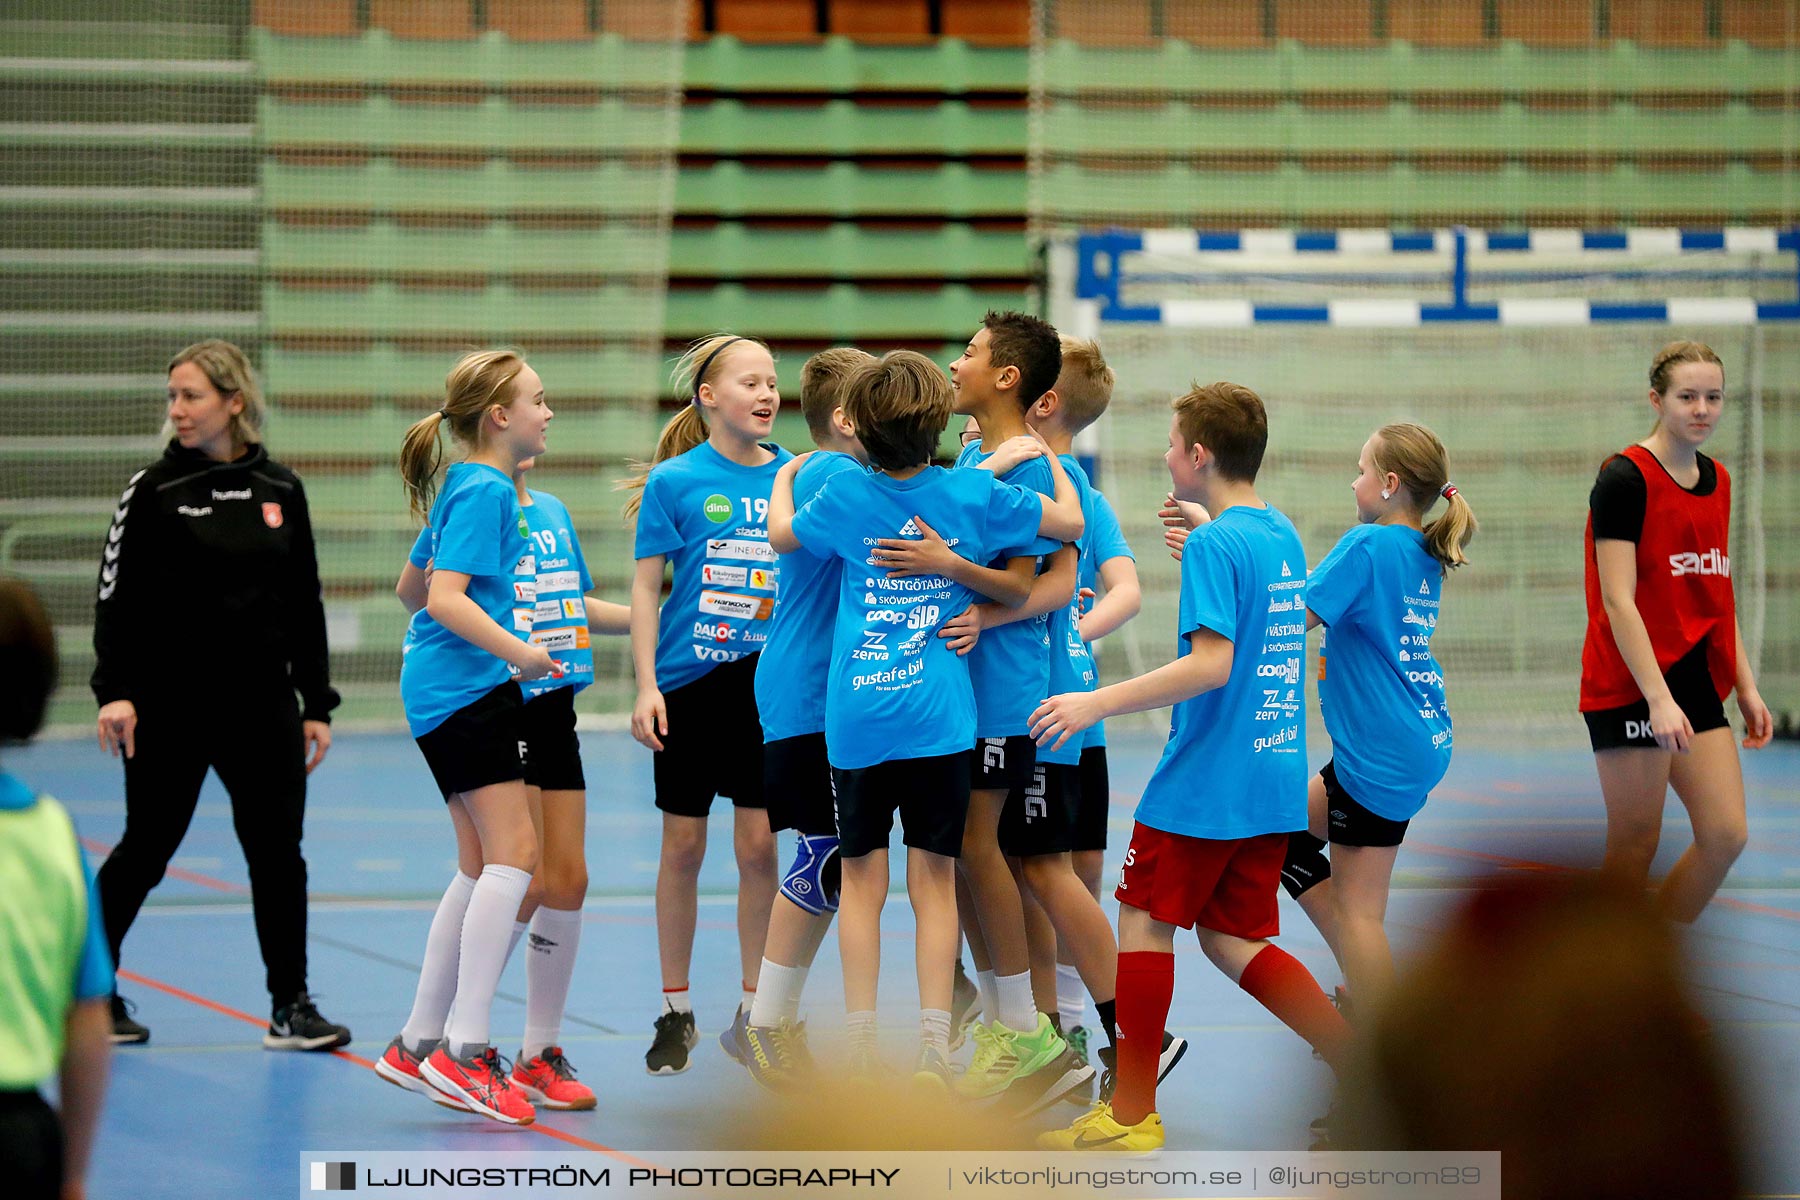 Klasshandboll Skövde 2019 Åldersklass 2008,mix,Arena Skövde,Skövde,Sverige,Handboll,,2019,211772